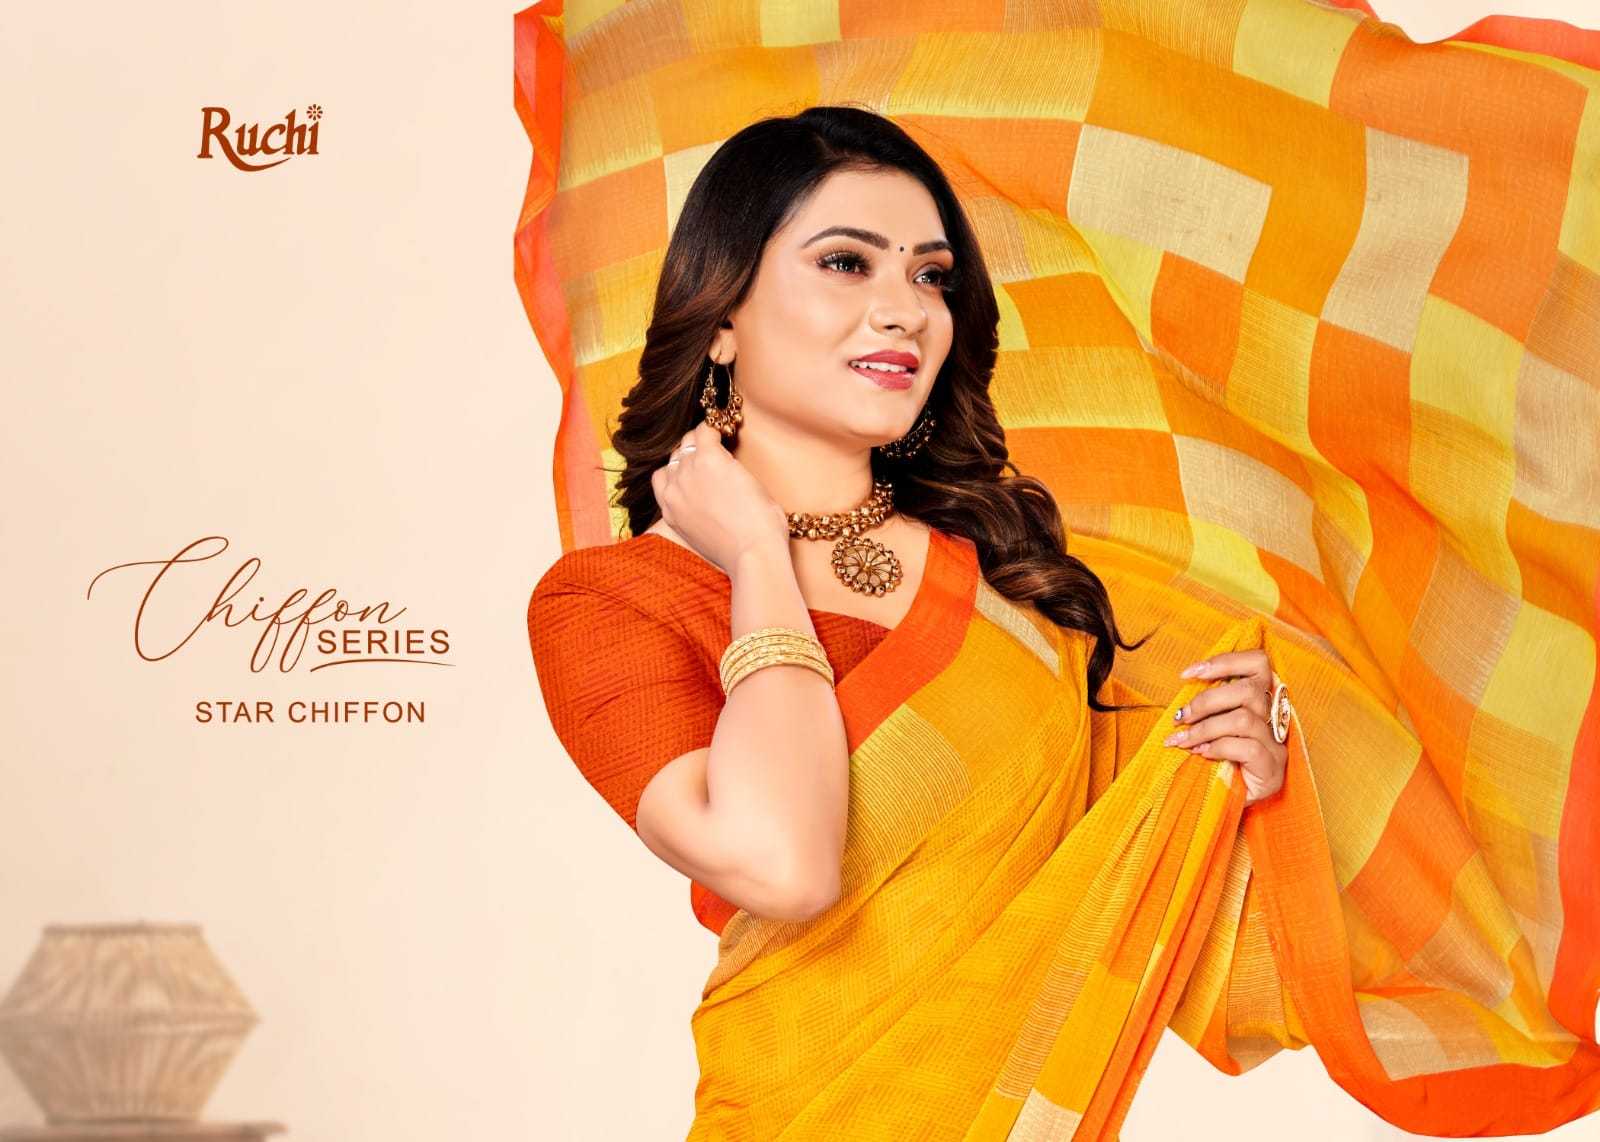 ruchi star chiffon 141 regular wear beautiful chiffon saree at reasonable rate